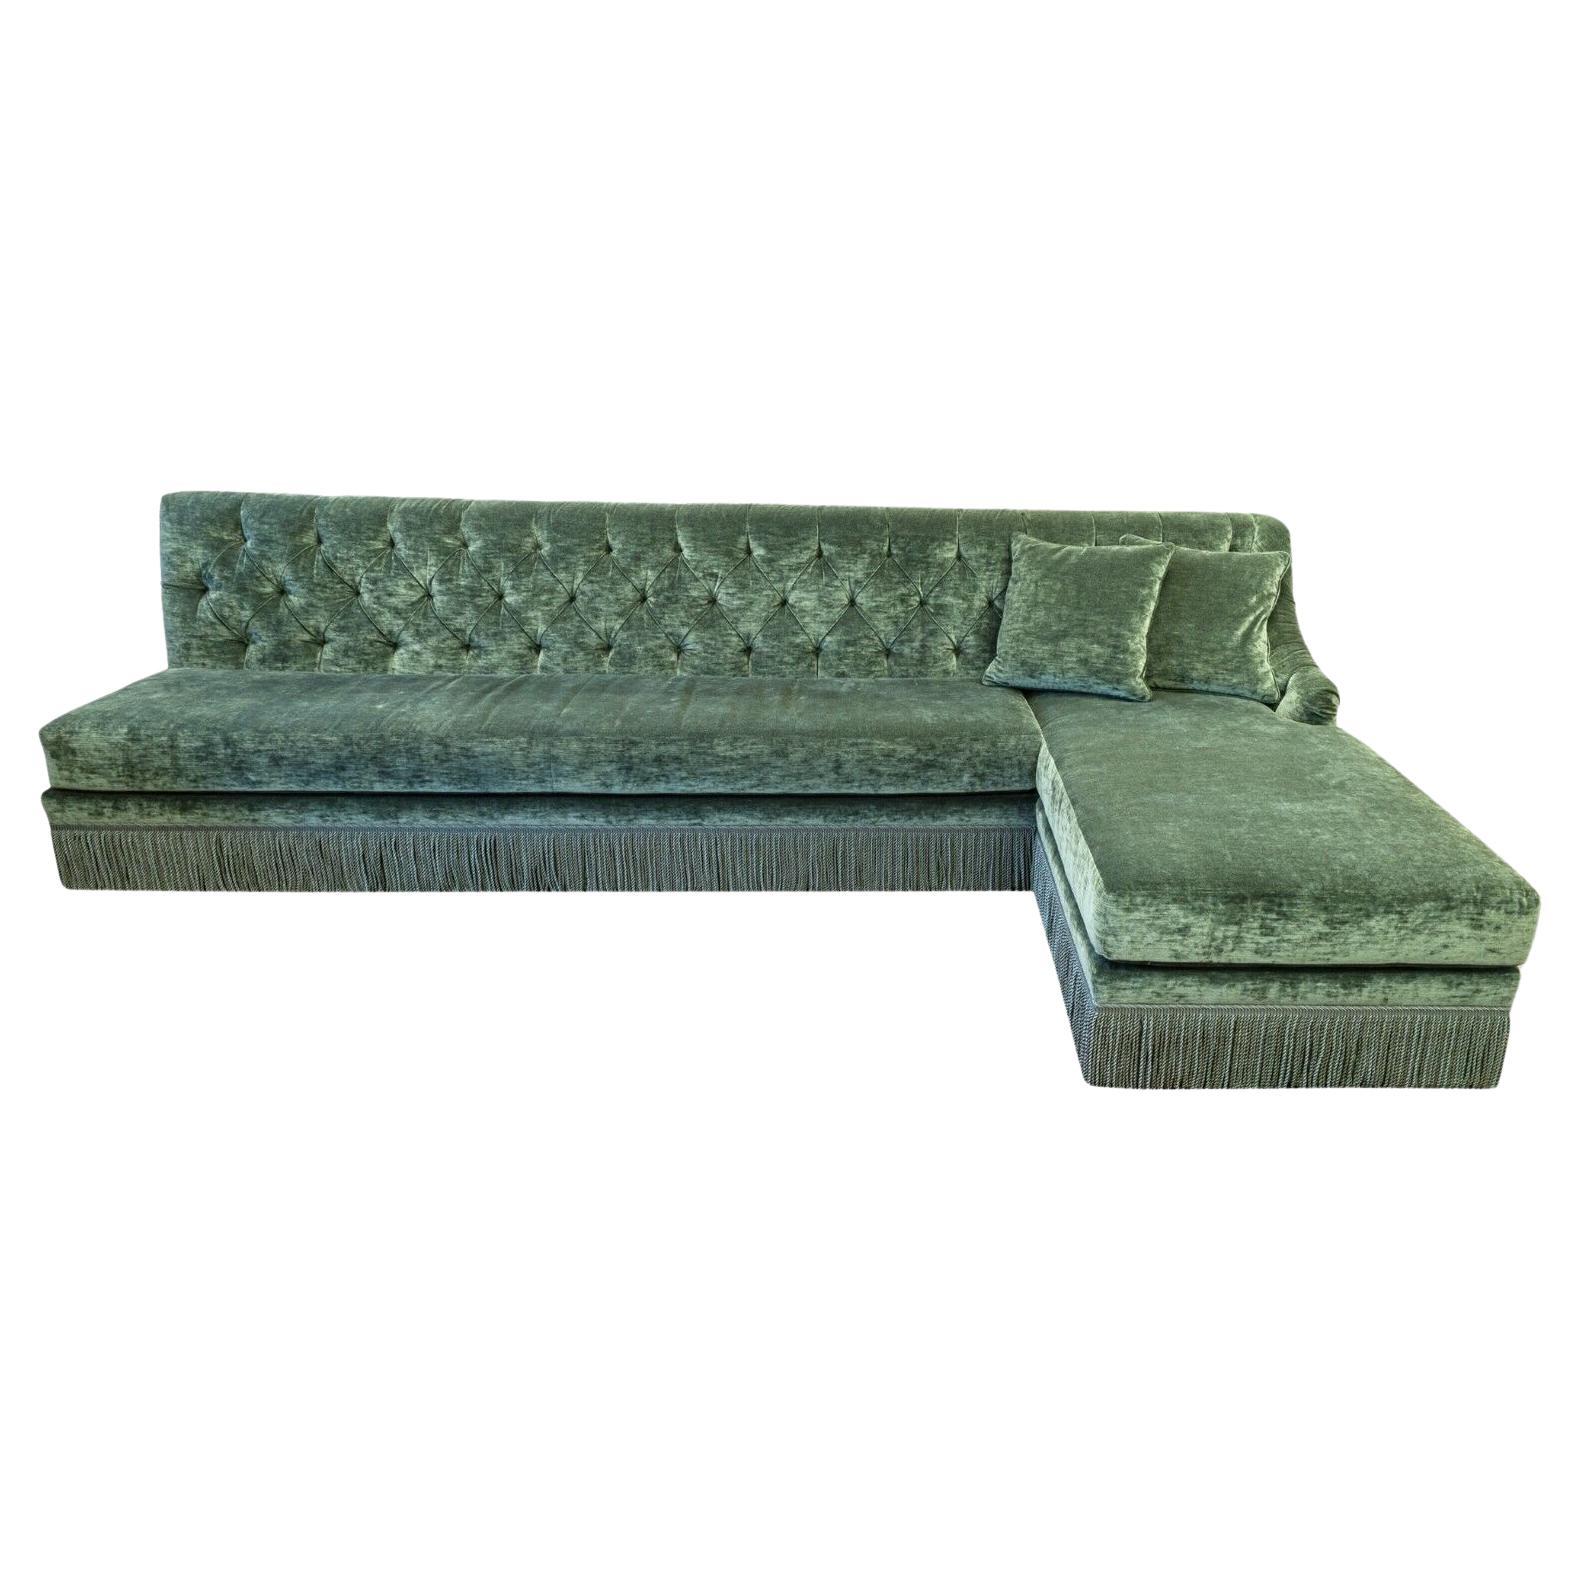 Custom Made Monumental Green Velvet Tufted Hollywood Regency Sofa Sectional